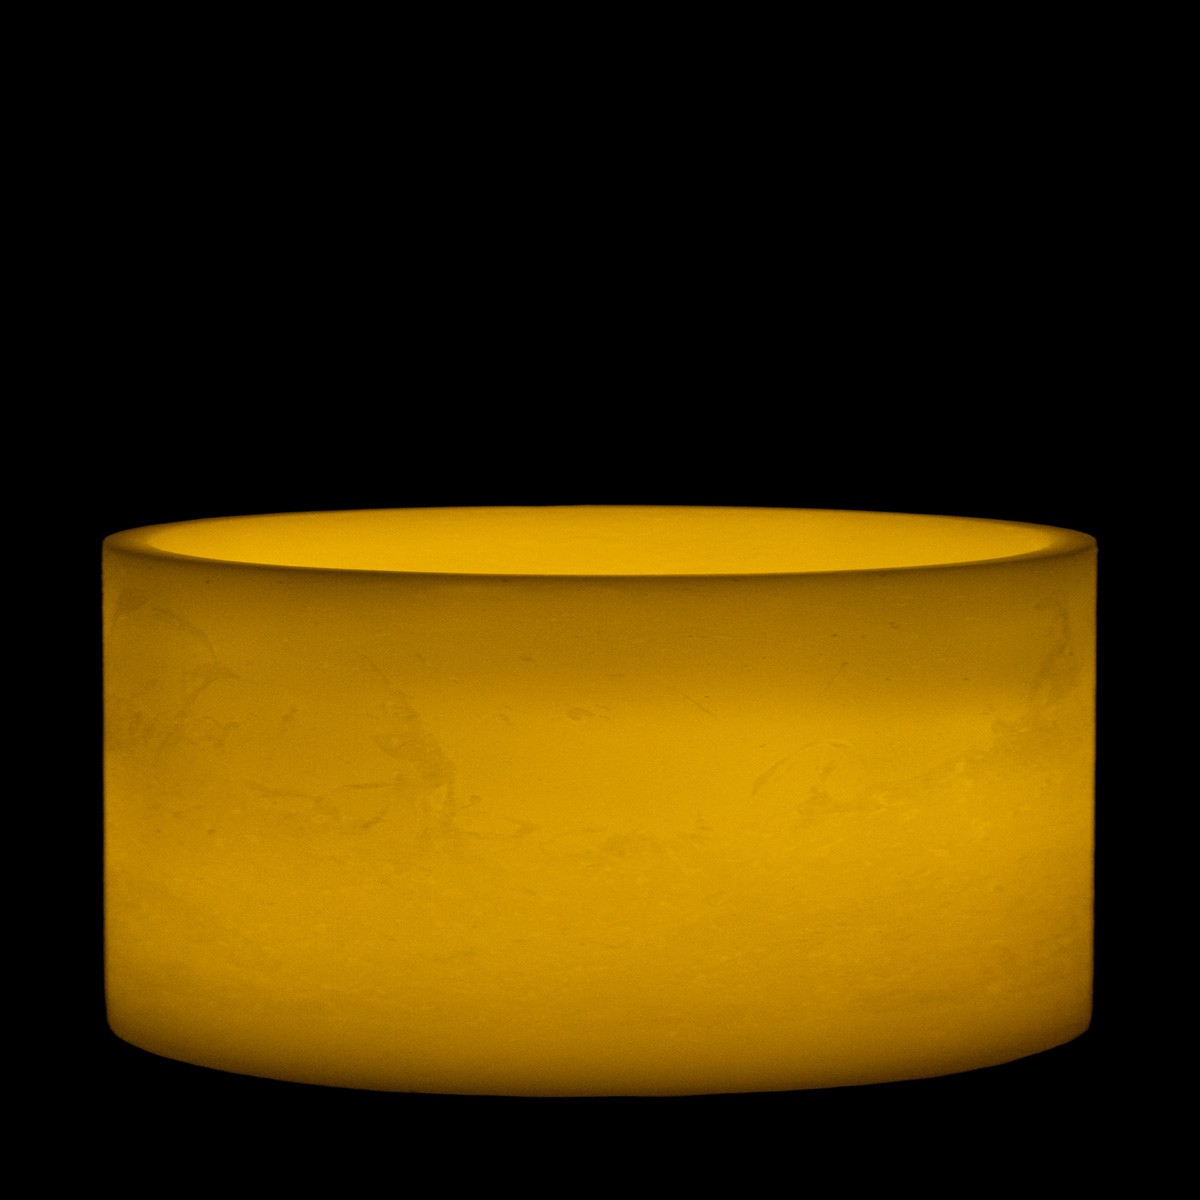 10x5 ivory round led flameless extra large pillar candles